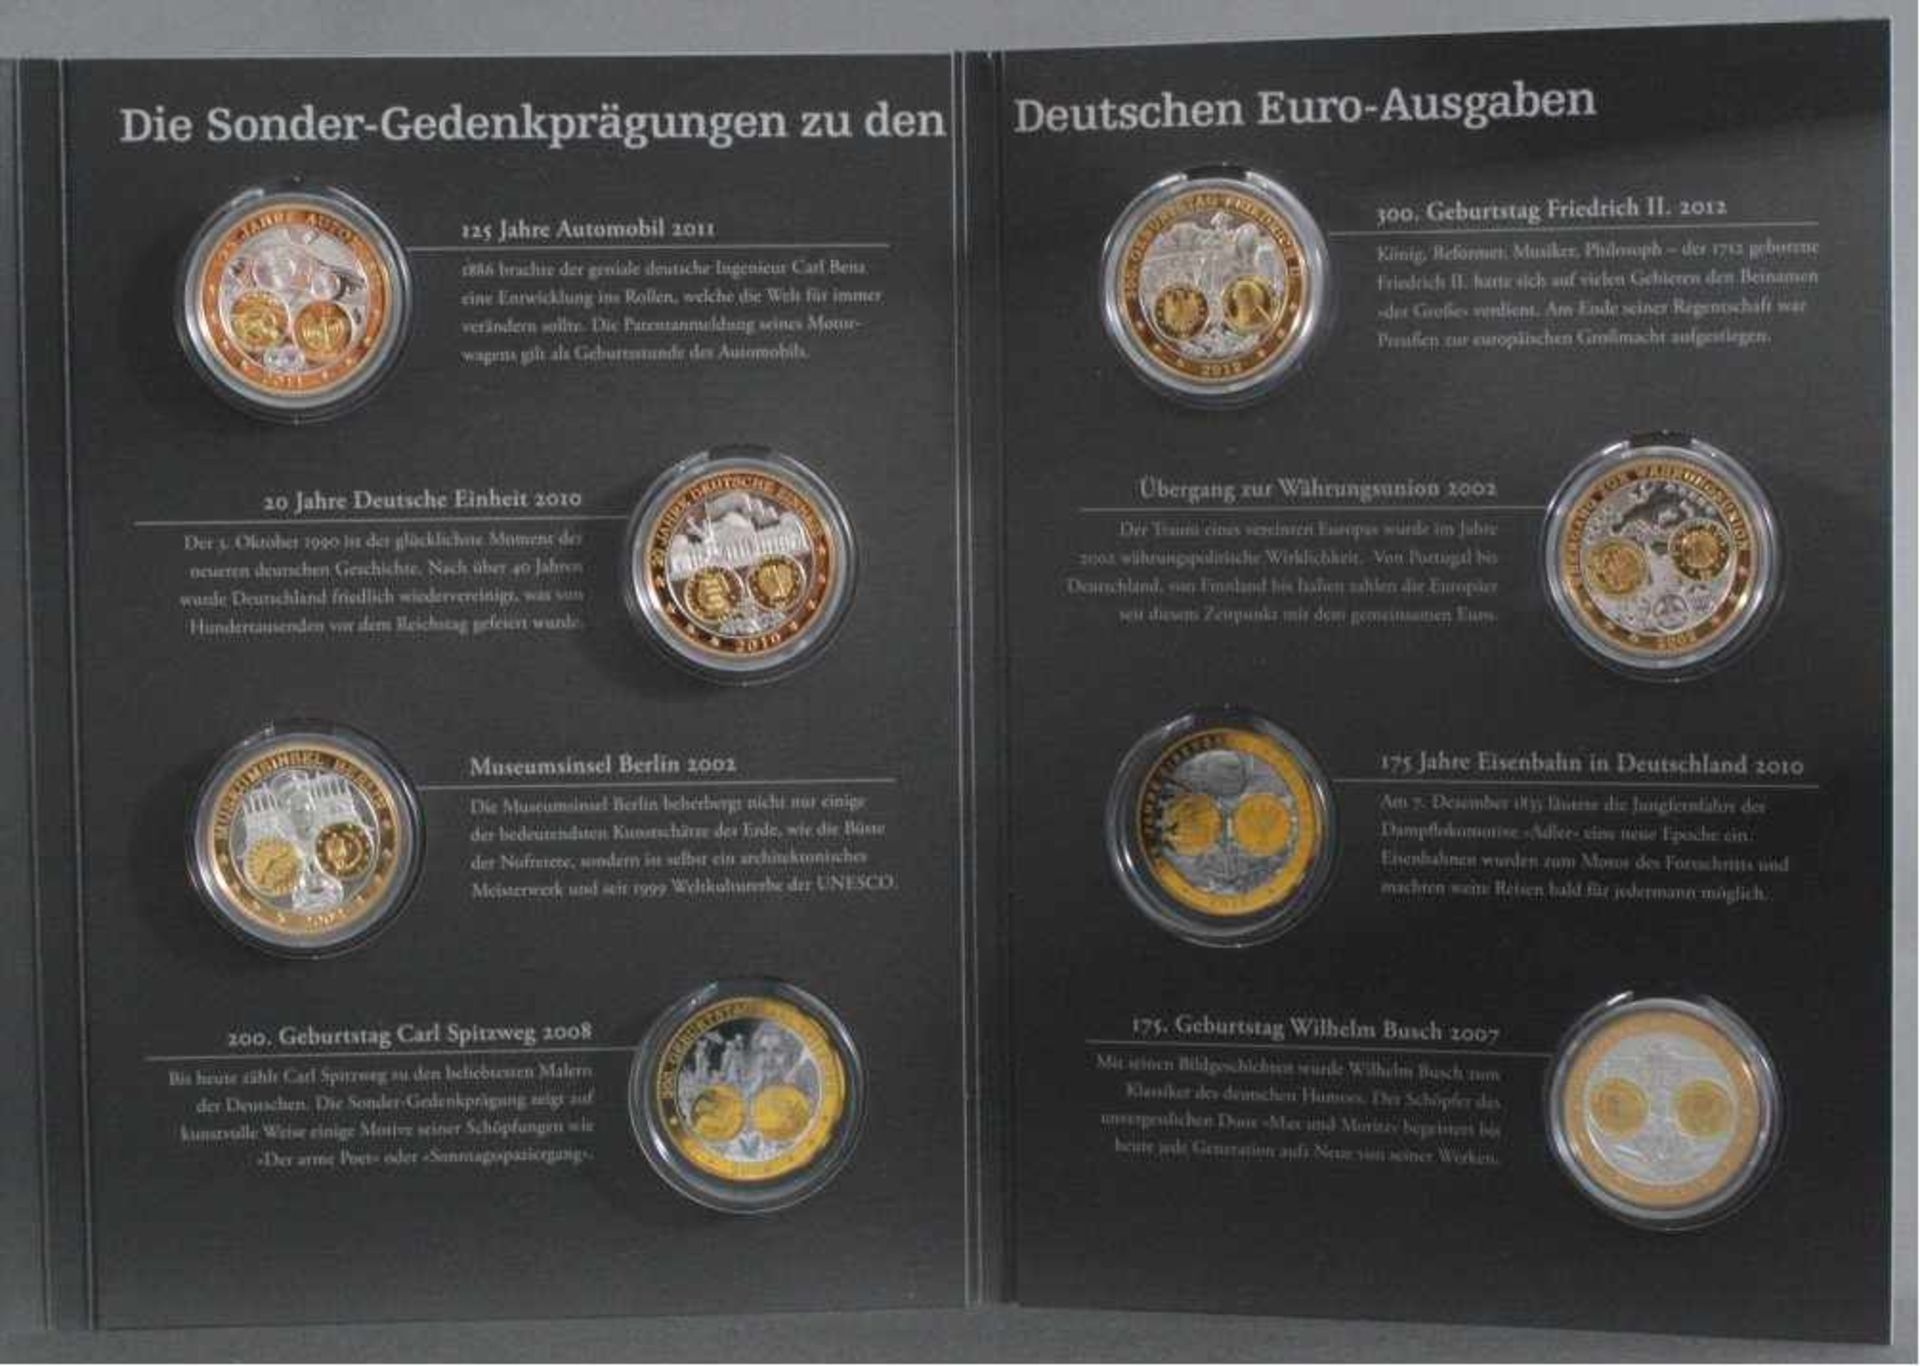 Sonder-Gedenkprägungen zu Deutschlands Euro Ausgaben6 Silbermünzen (333/1000) mit Feingoldauflage. - Image 3 of 3